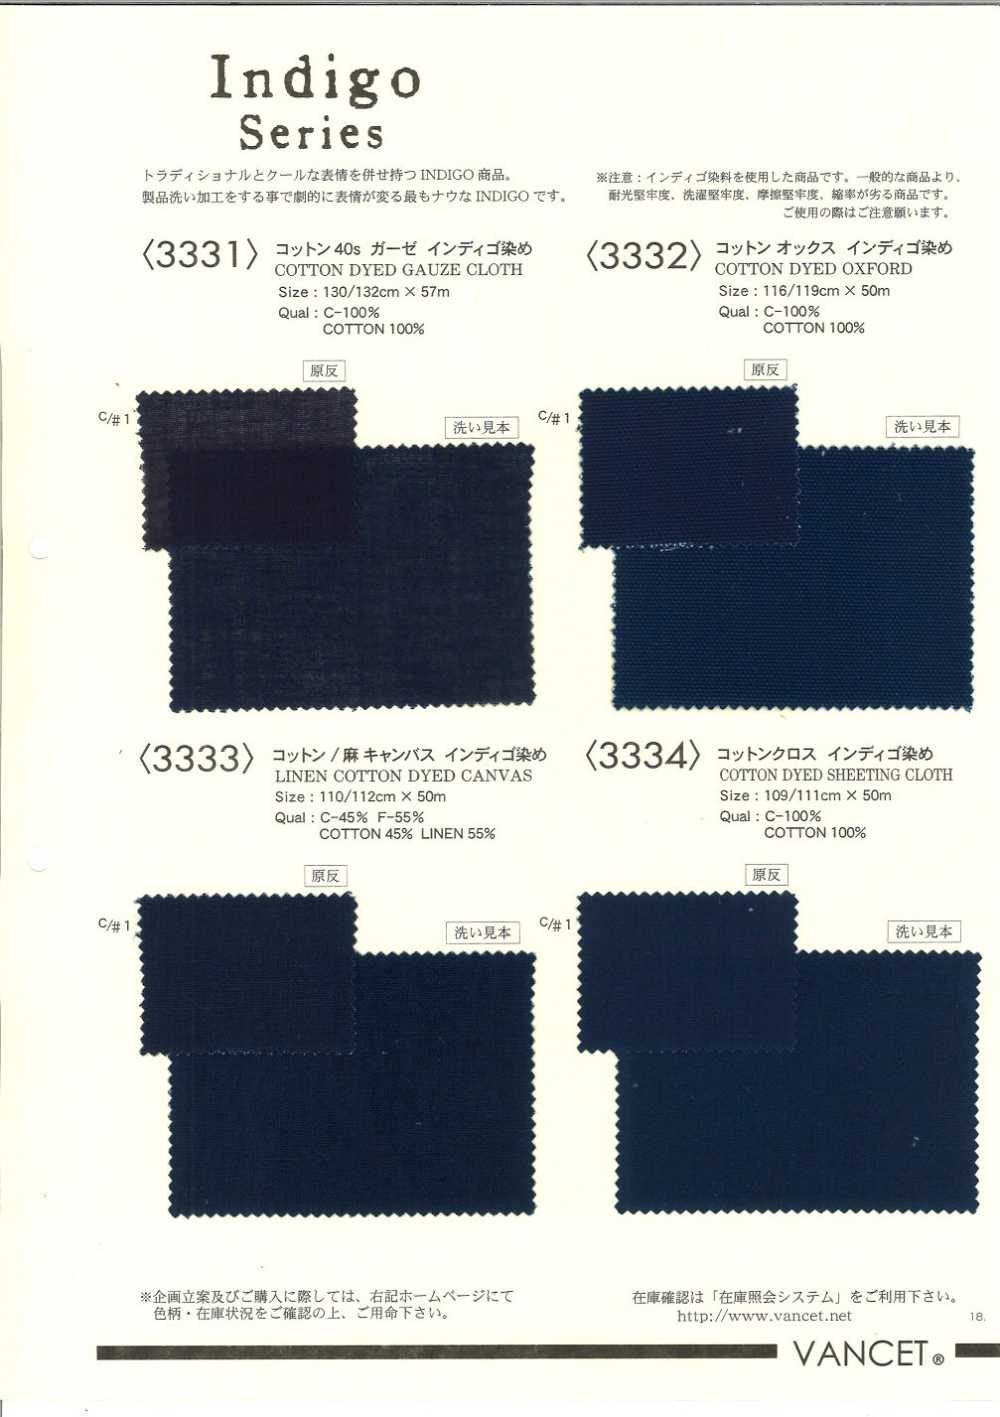 3332 Cotton Oxford Indigo Dyeing[Textile / Fabric] VANCET